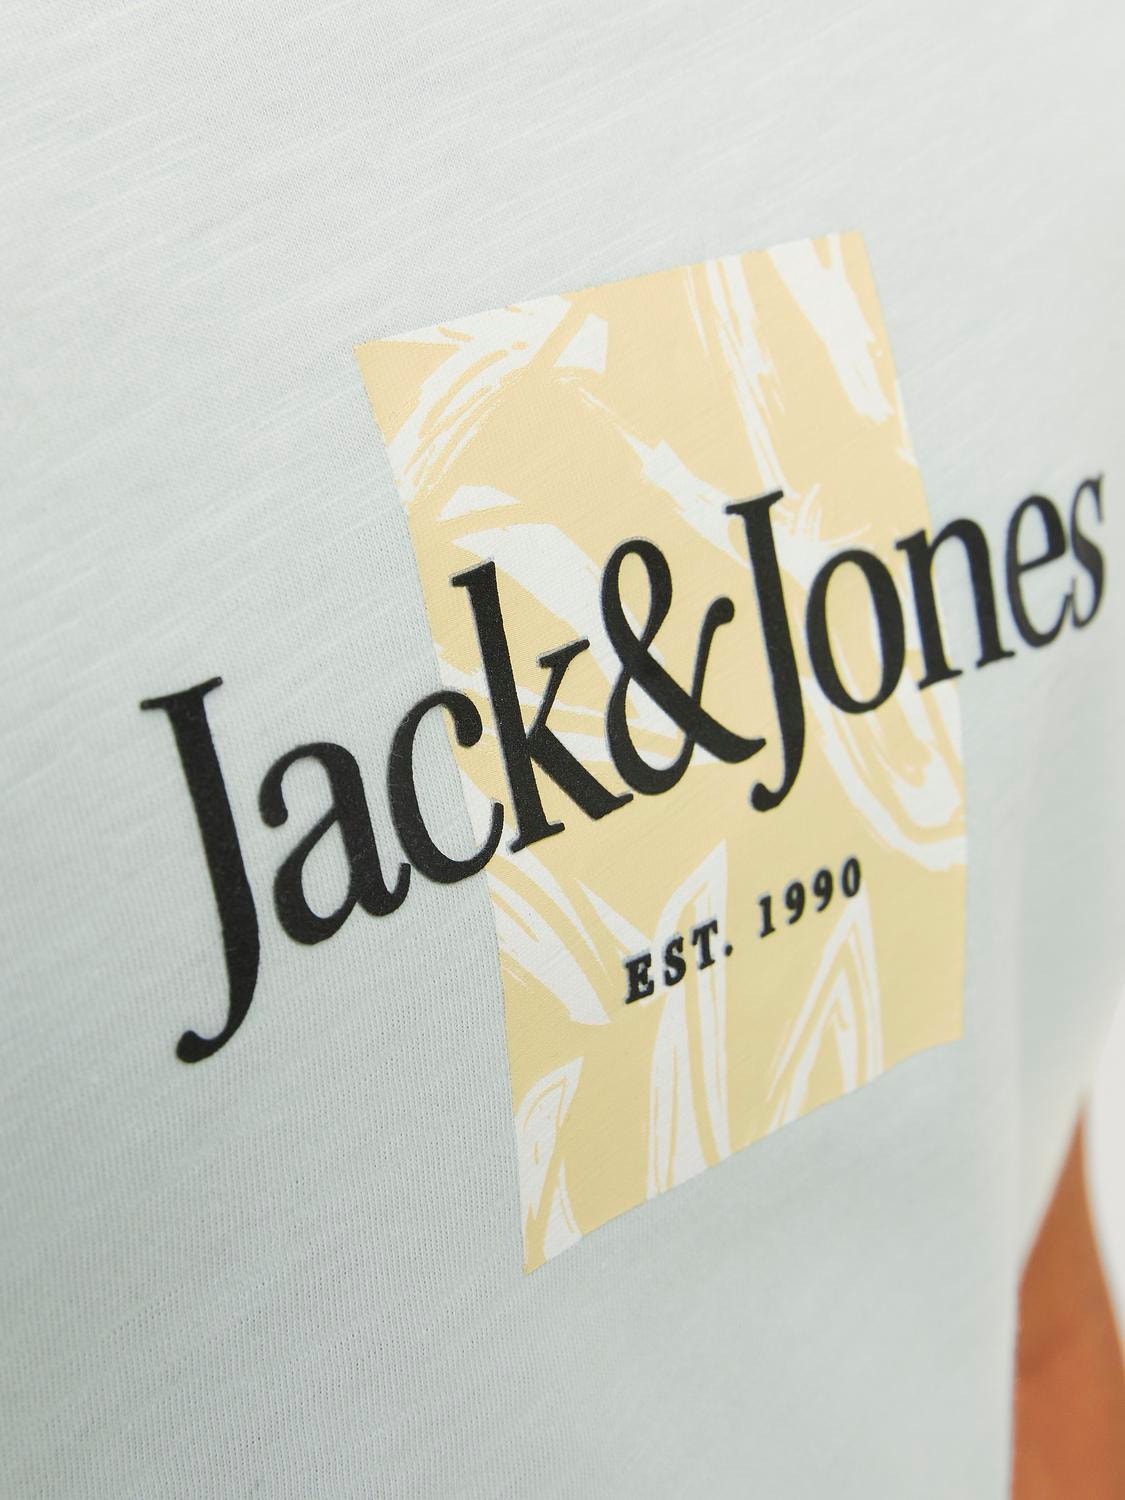 Jack & Jones Gedrukt T-shirt Voor jongens -Skylight - 12253973